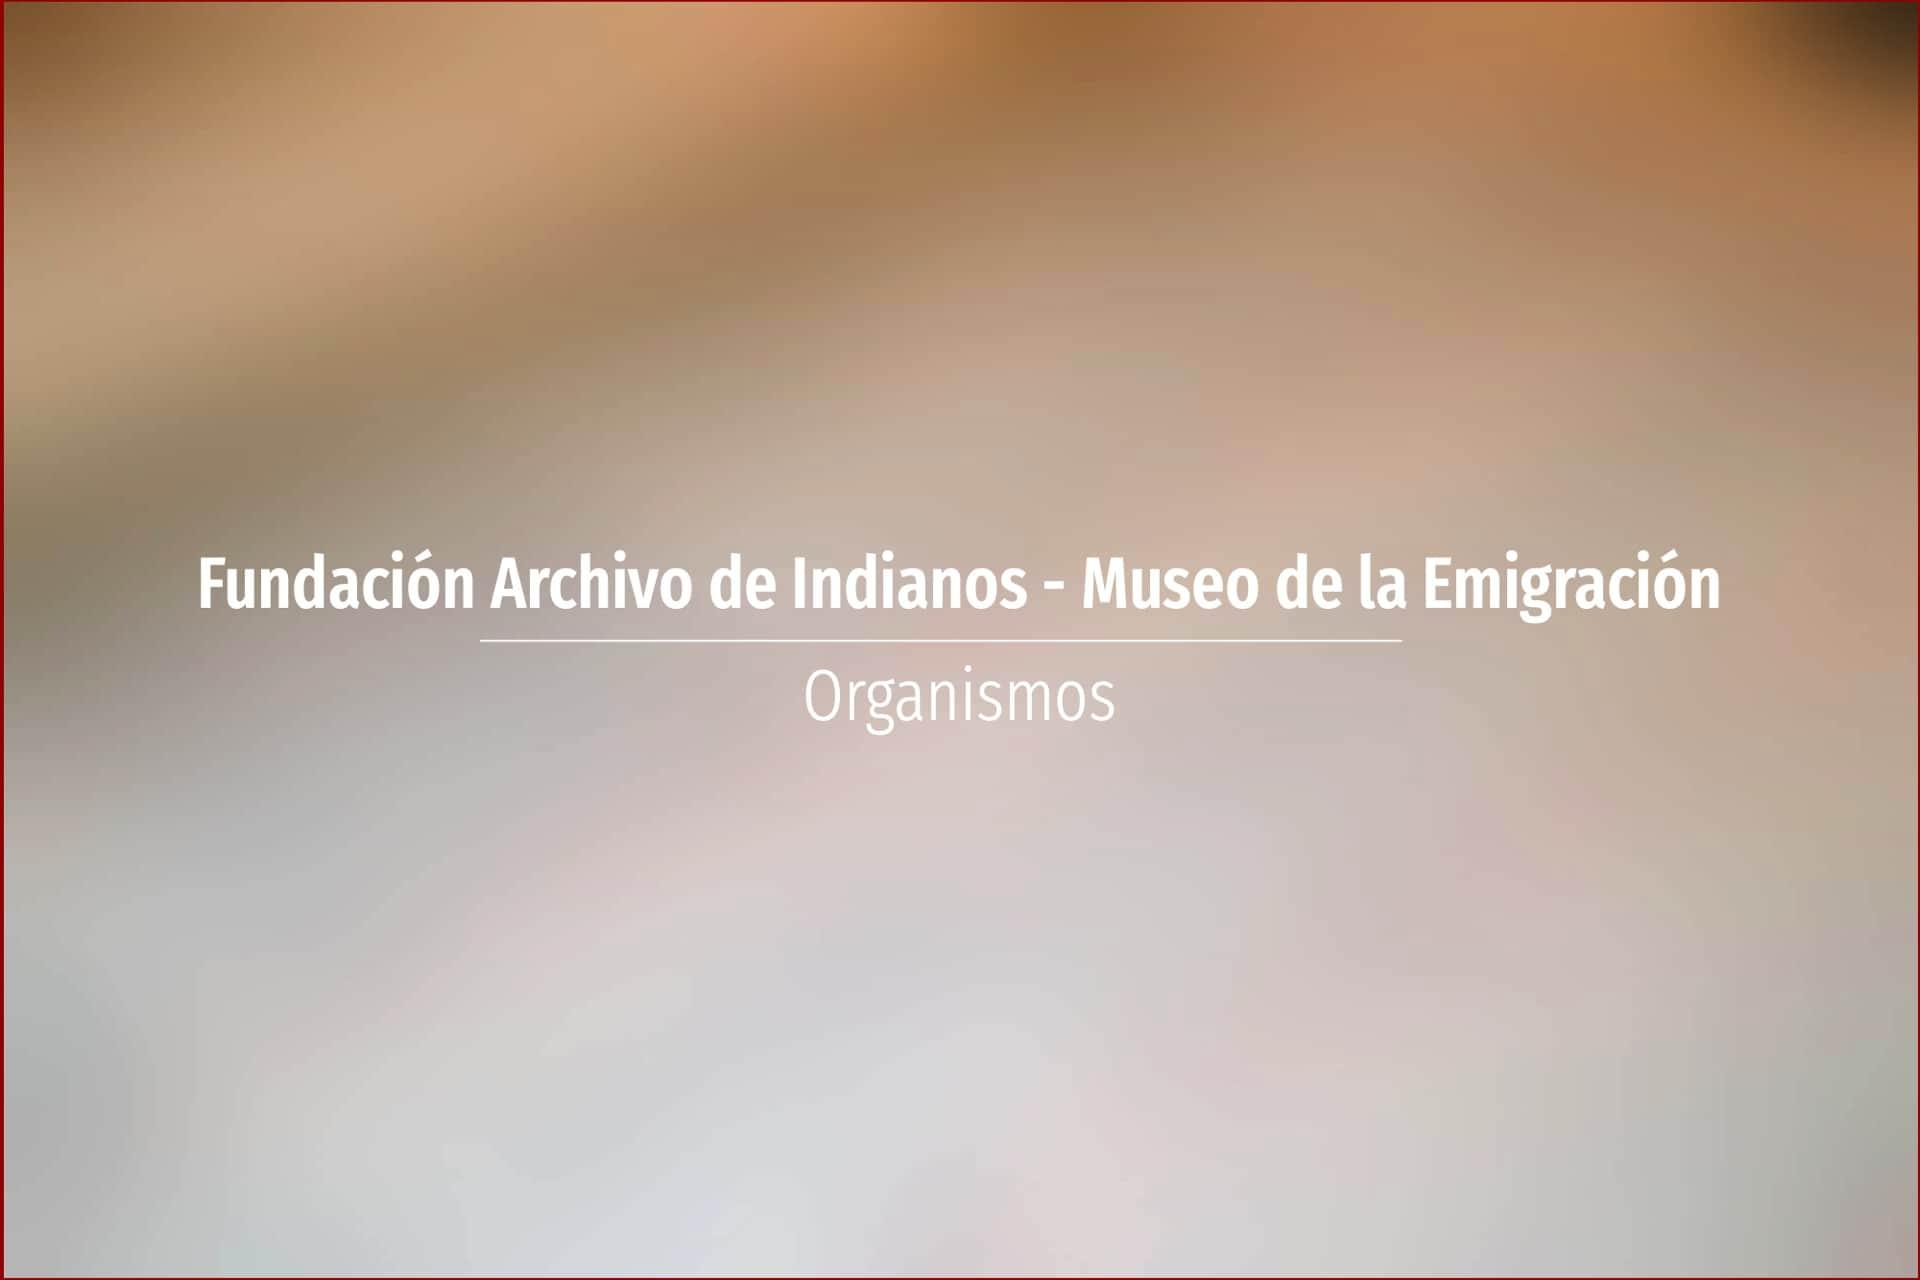 Fundación Archivo de Indianos - Museo de la Emigración